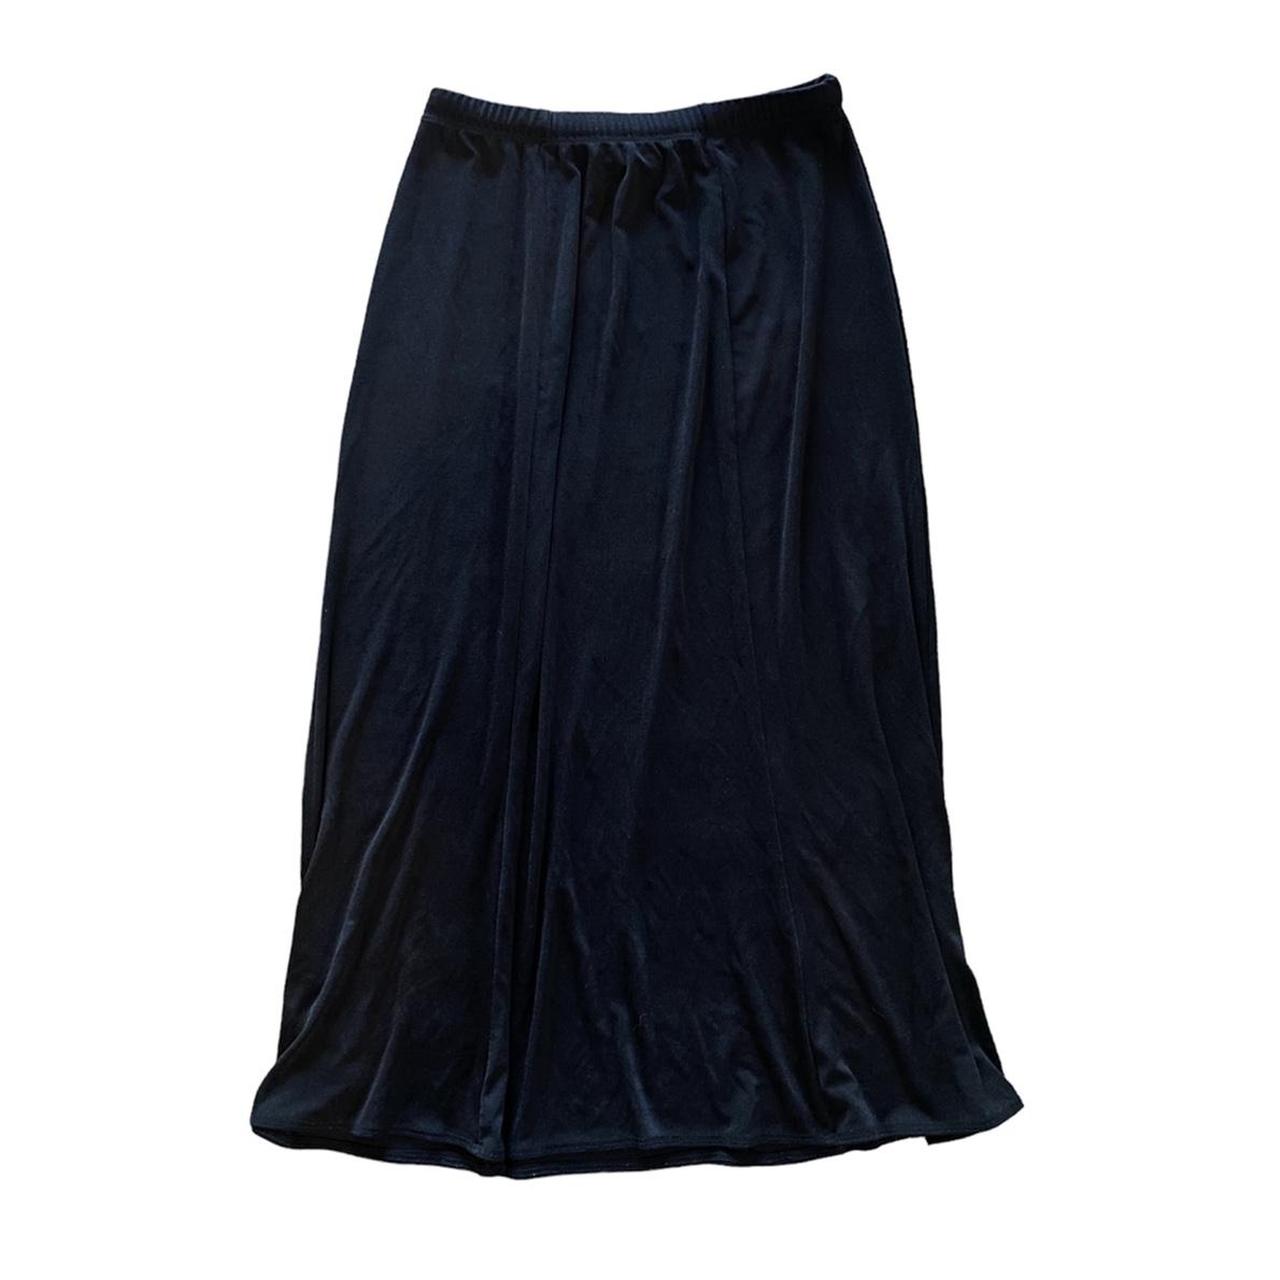 Notations Women's Black Skirt